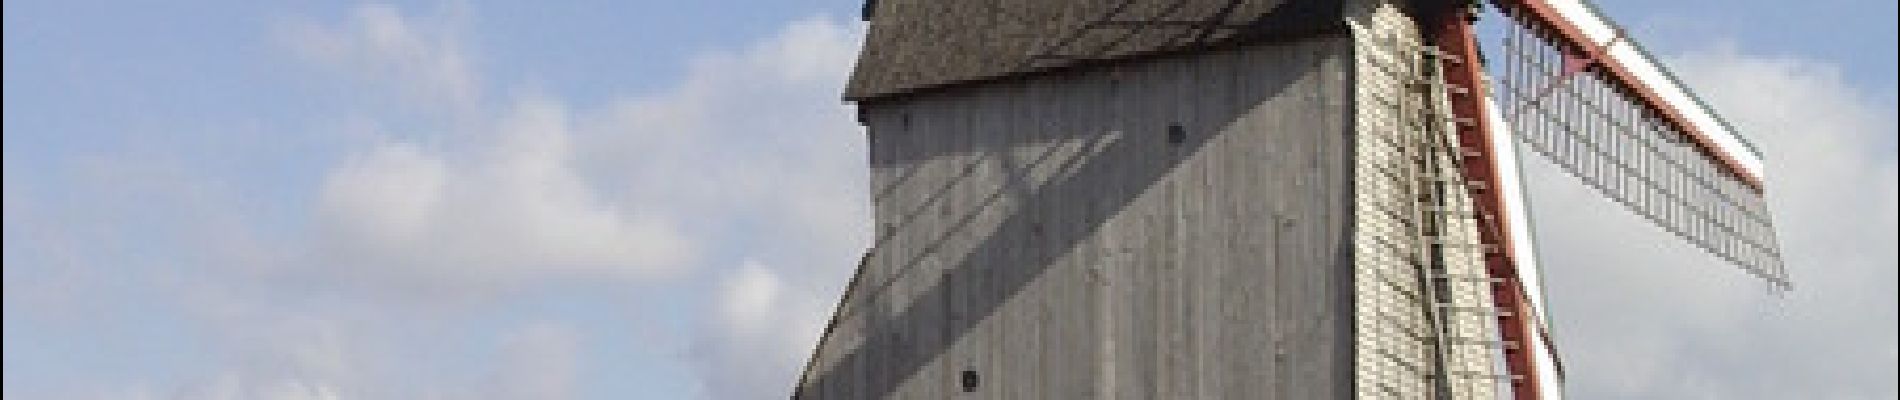 Randonnée Cheval Oudezeele - La ronde des moulins à vent - Oudezeele - Photo